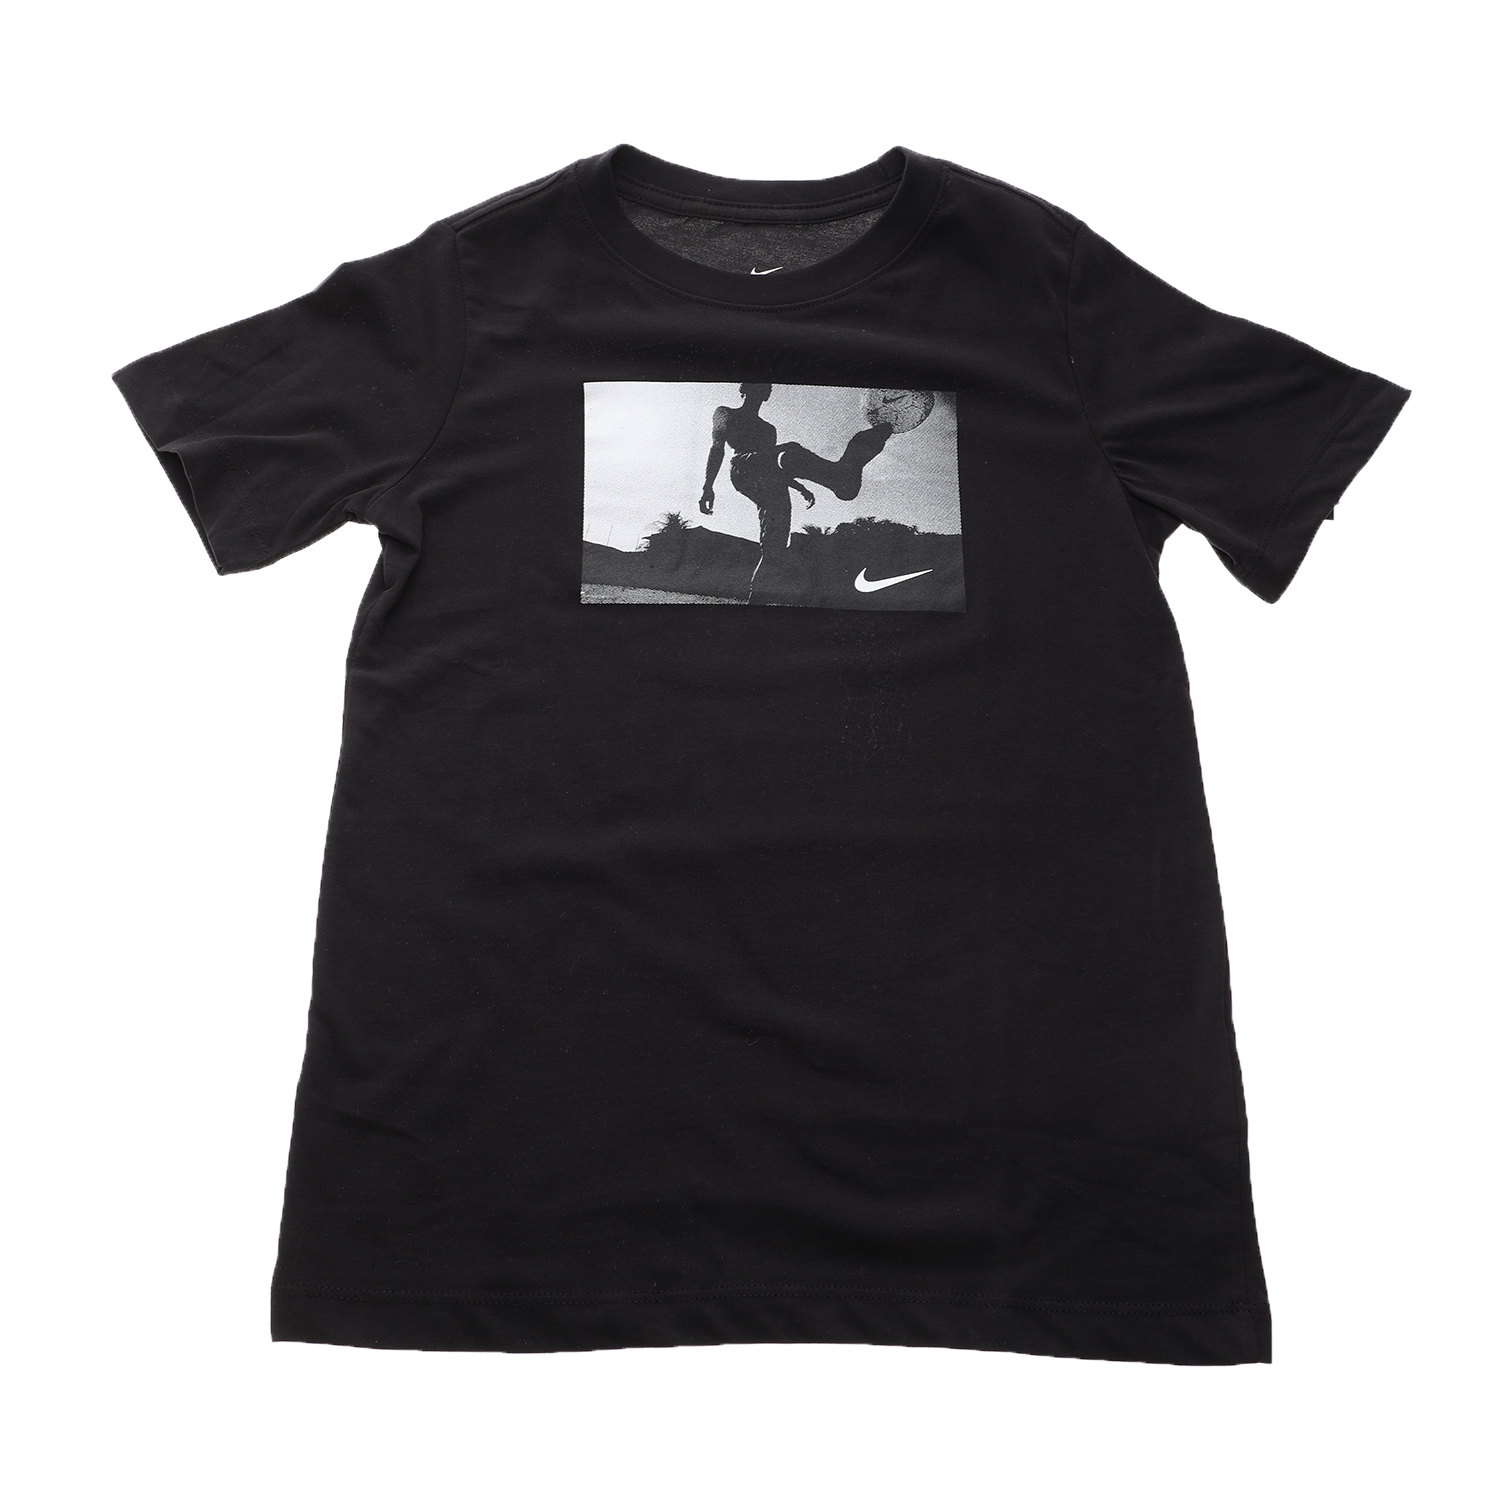 Παιδικά/Boys/Ρούχα/Αθλητικά NIKE - Παιδικό t-shirt NIKE DRY TEE DFC SOCCER PHOTO μαύρο